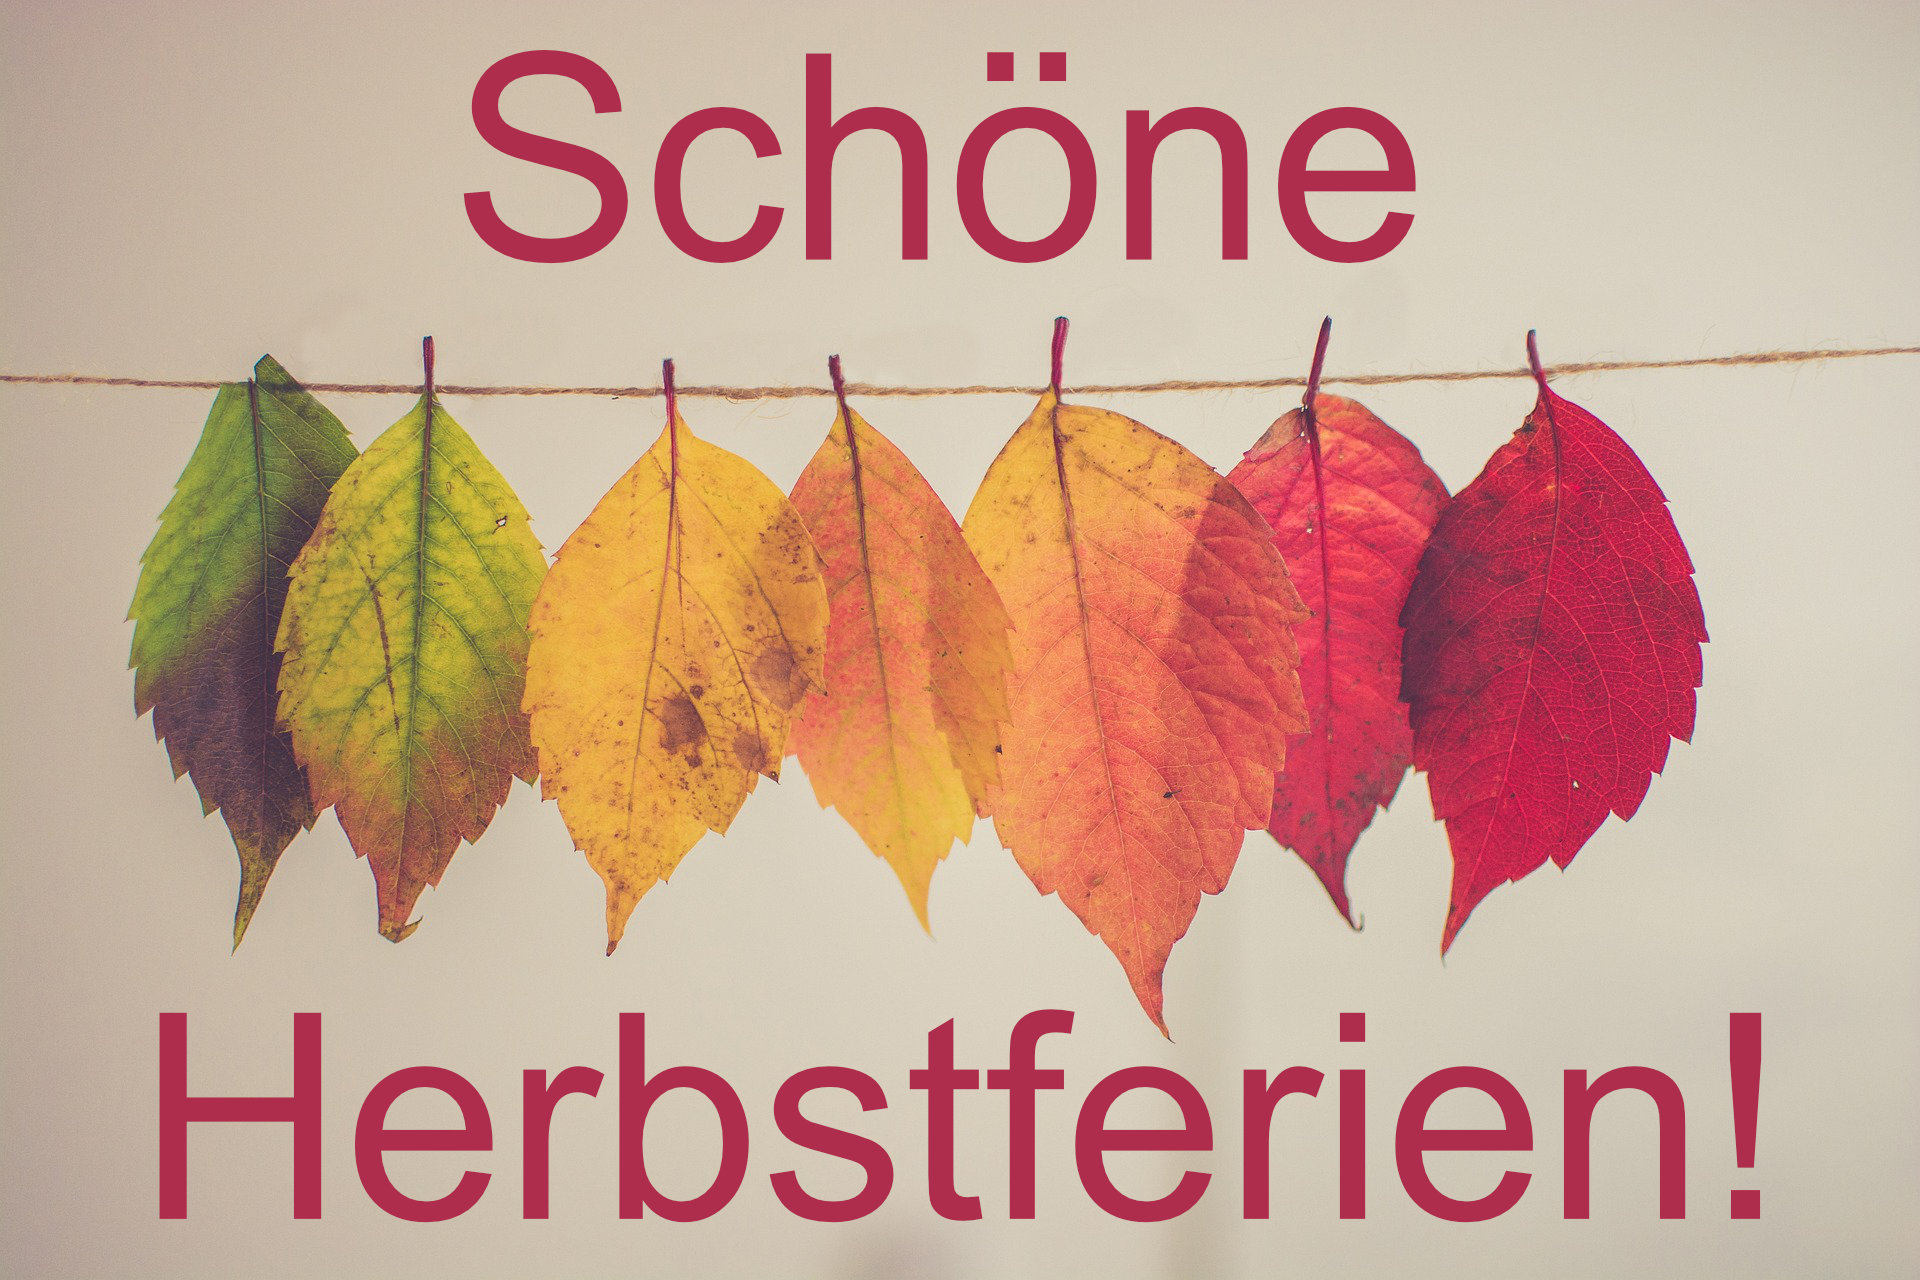 Wir wünschen allen Stoppenberger:innen schöne Herbstferien! ;-)